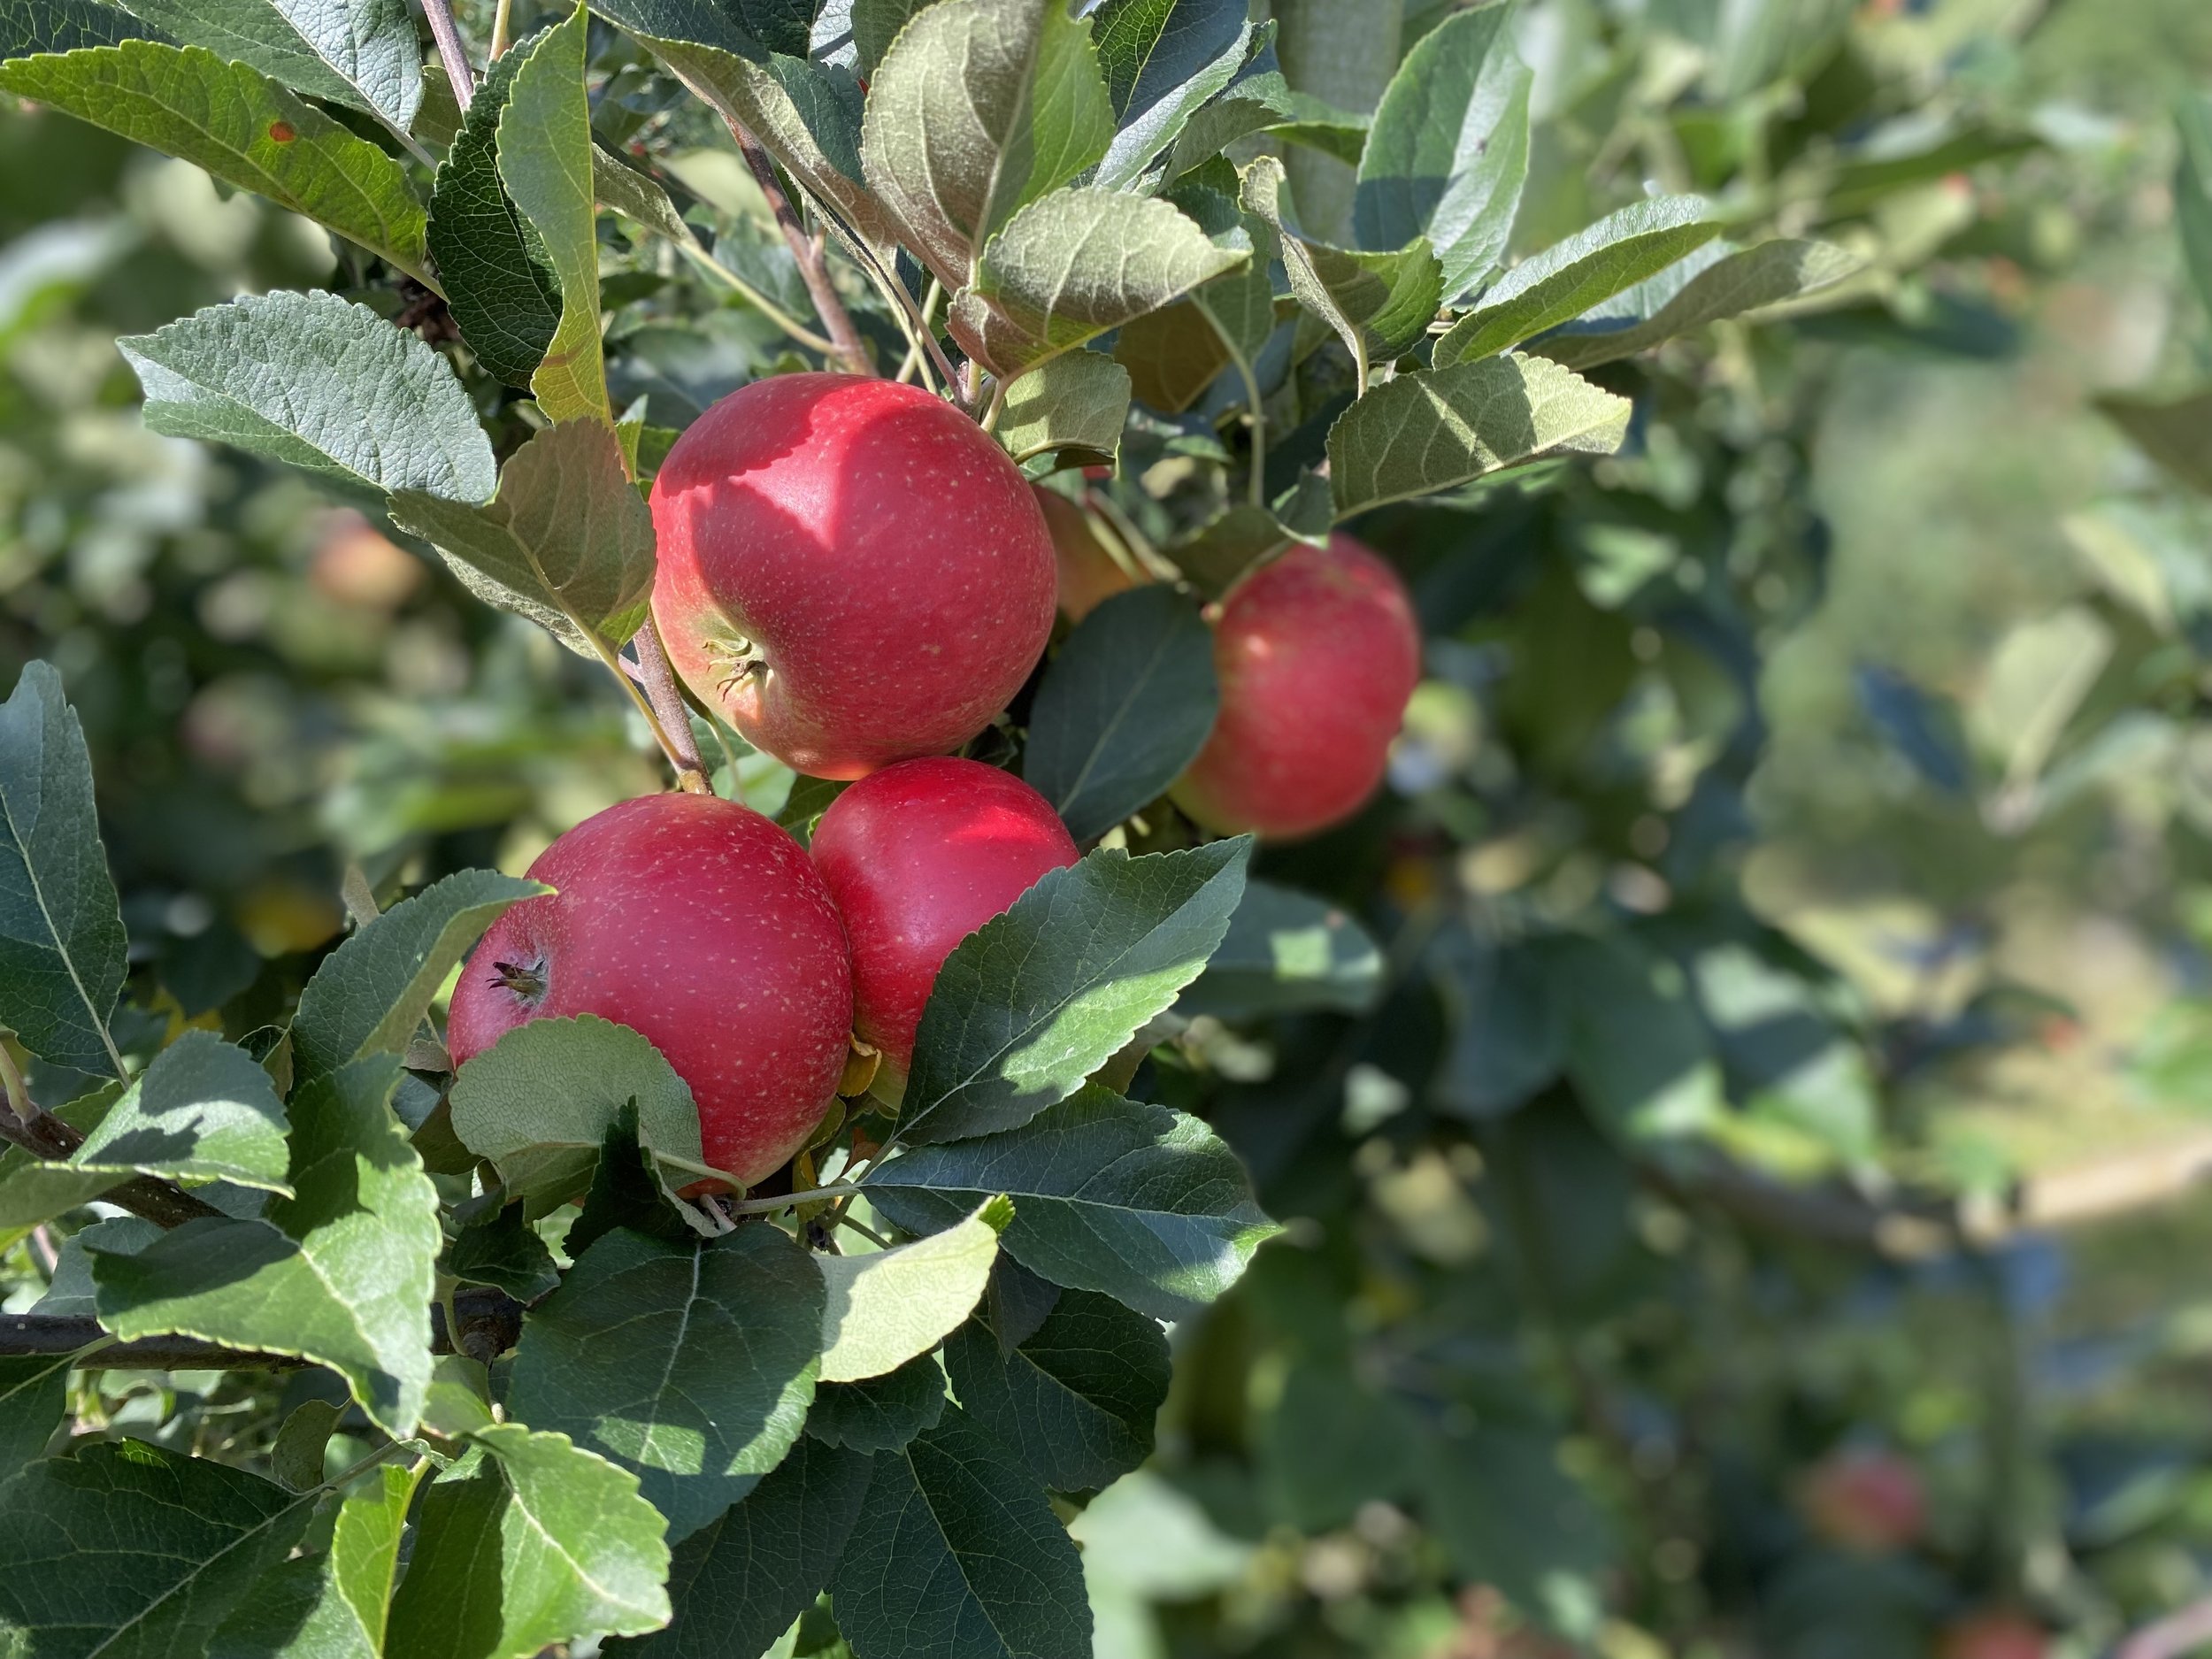 Manzanas Discovery maduras en el árbol del huerto Frugt de Ørskov